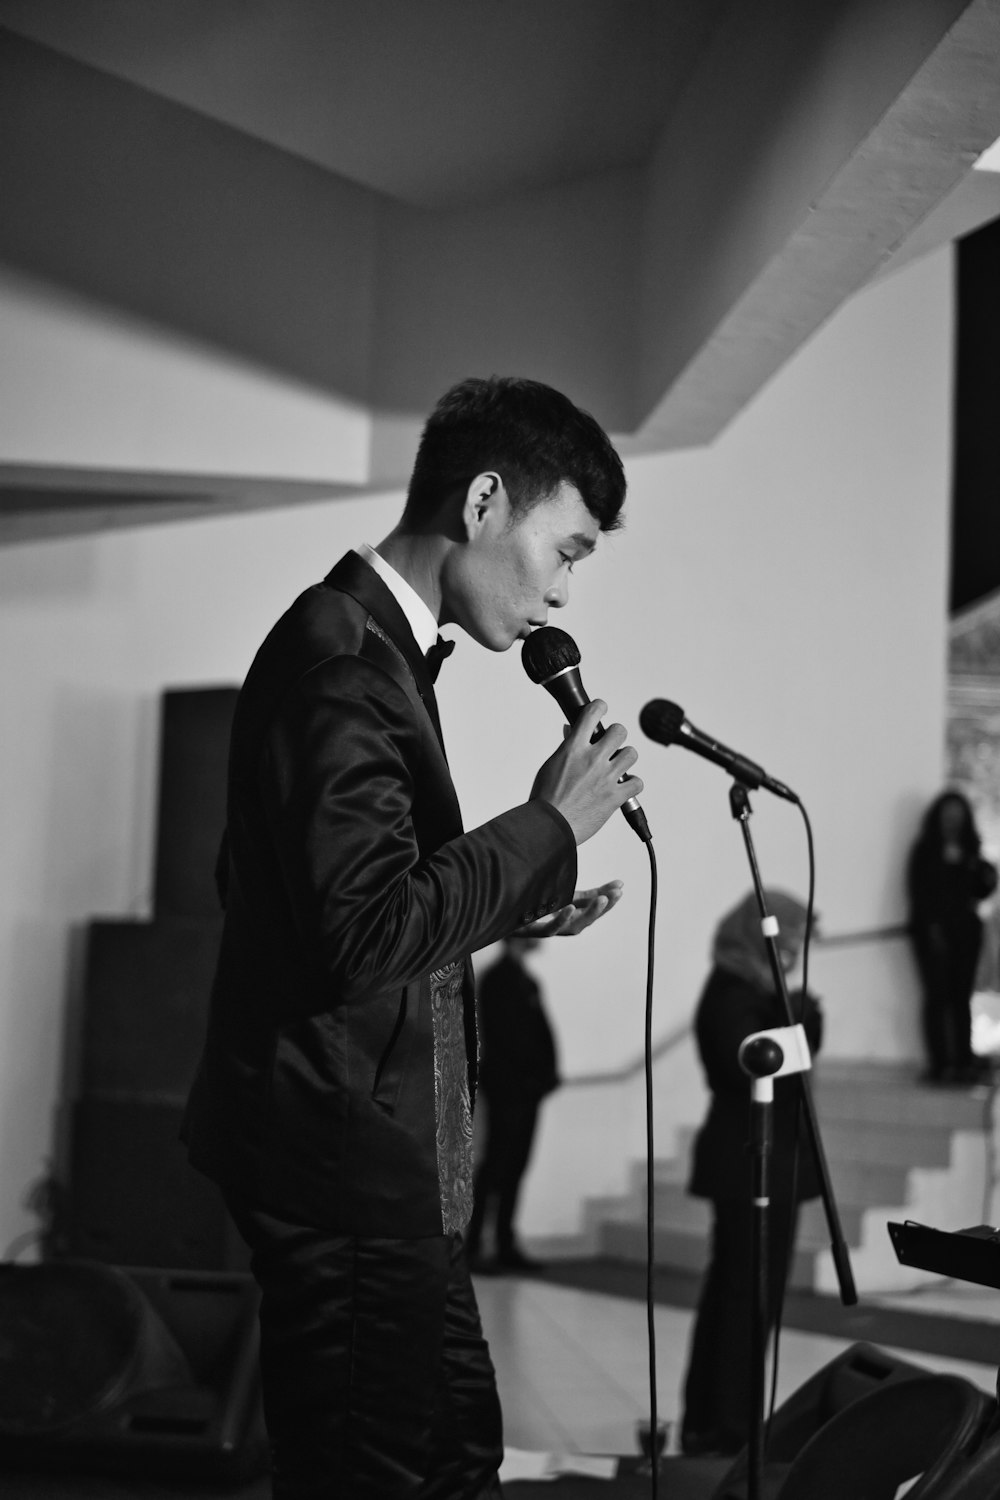 Mann im schwarzen Anzug singt auf der Bühne